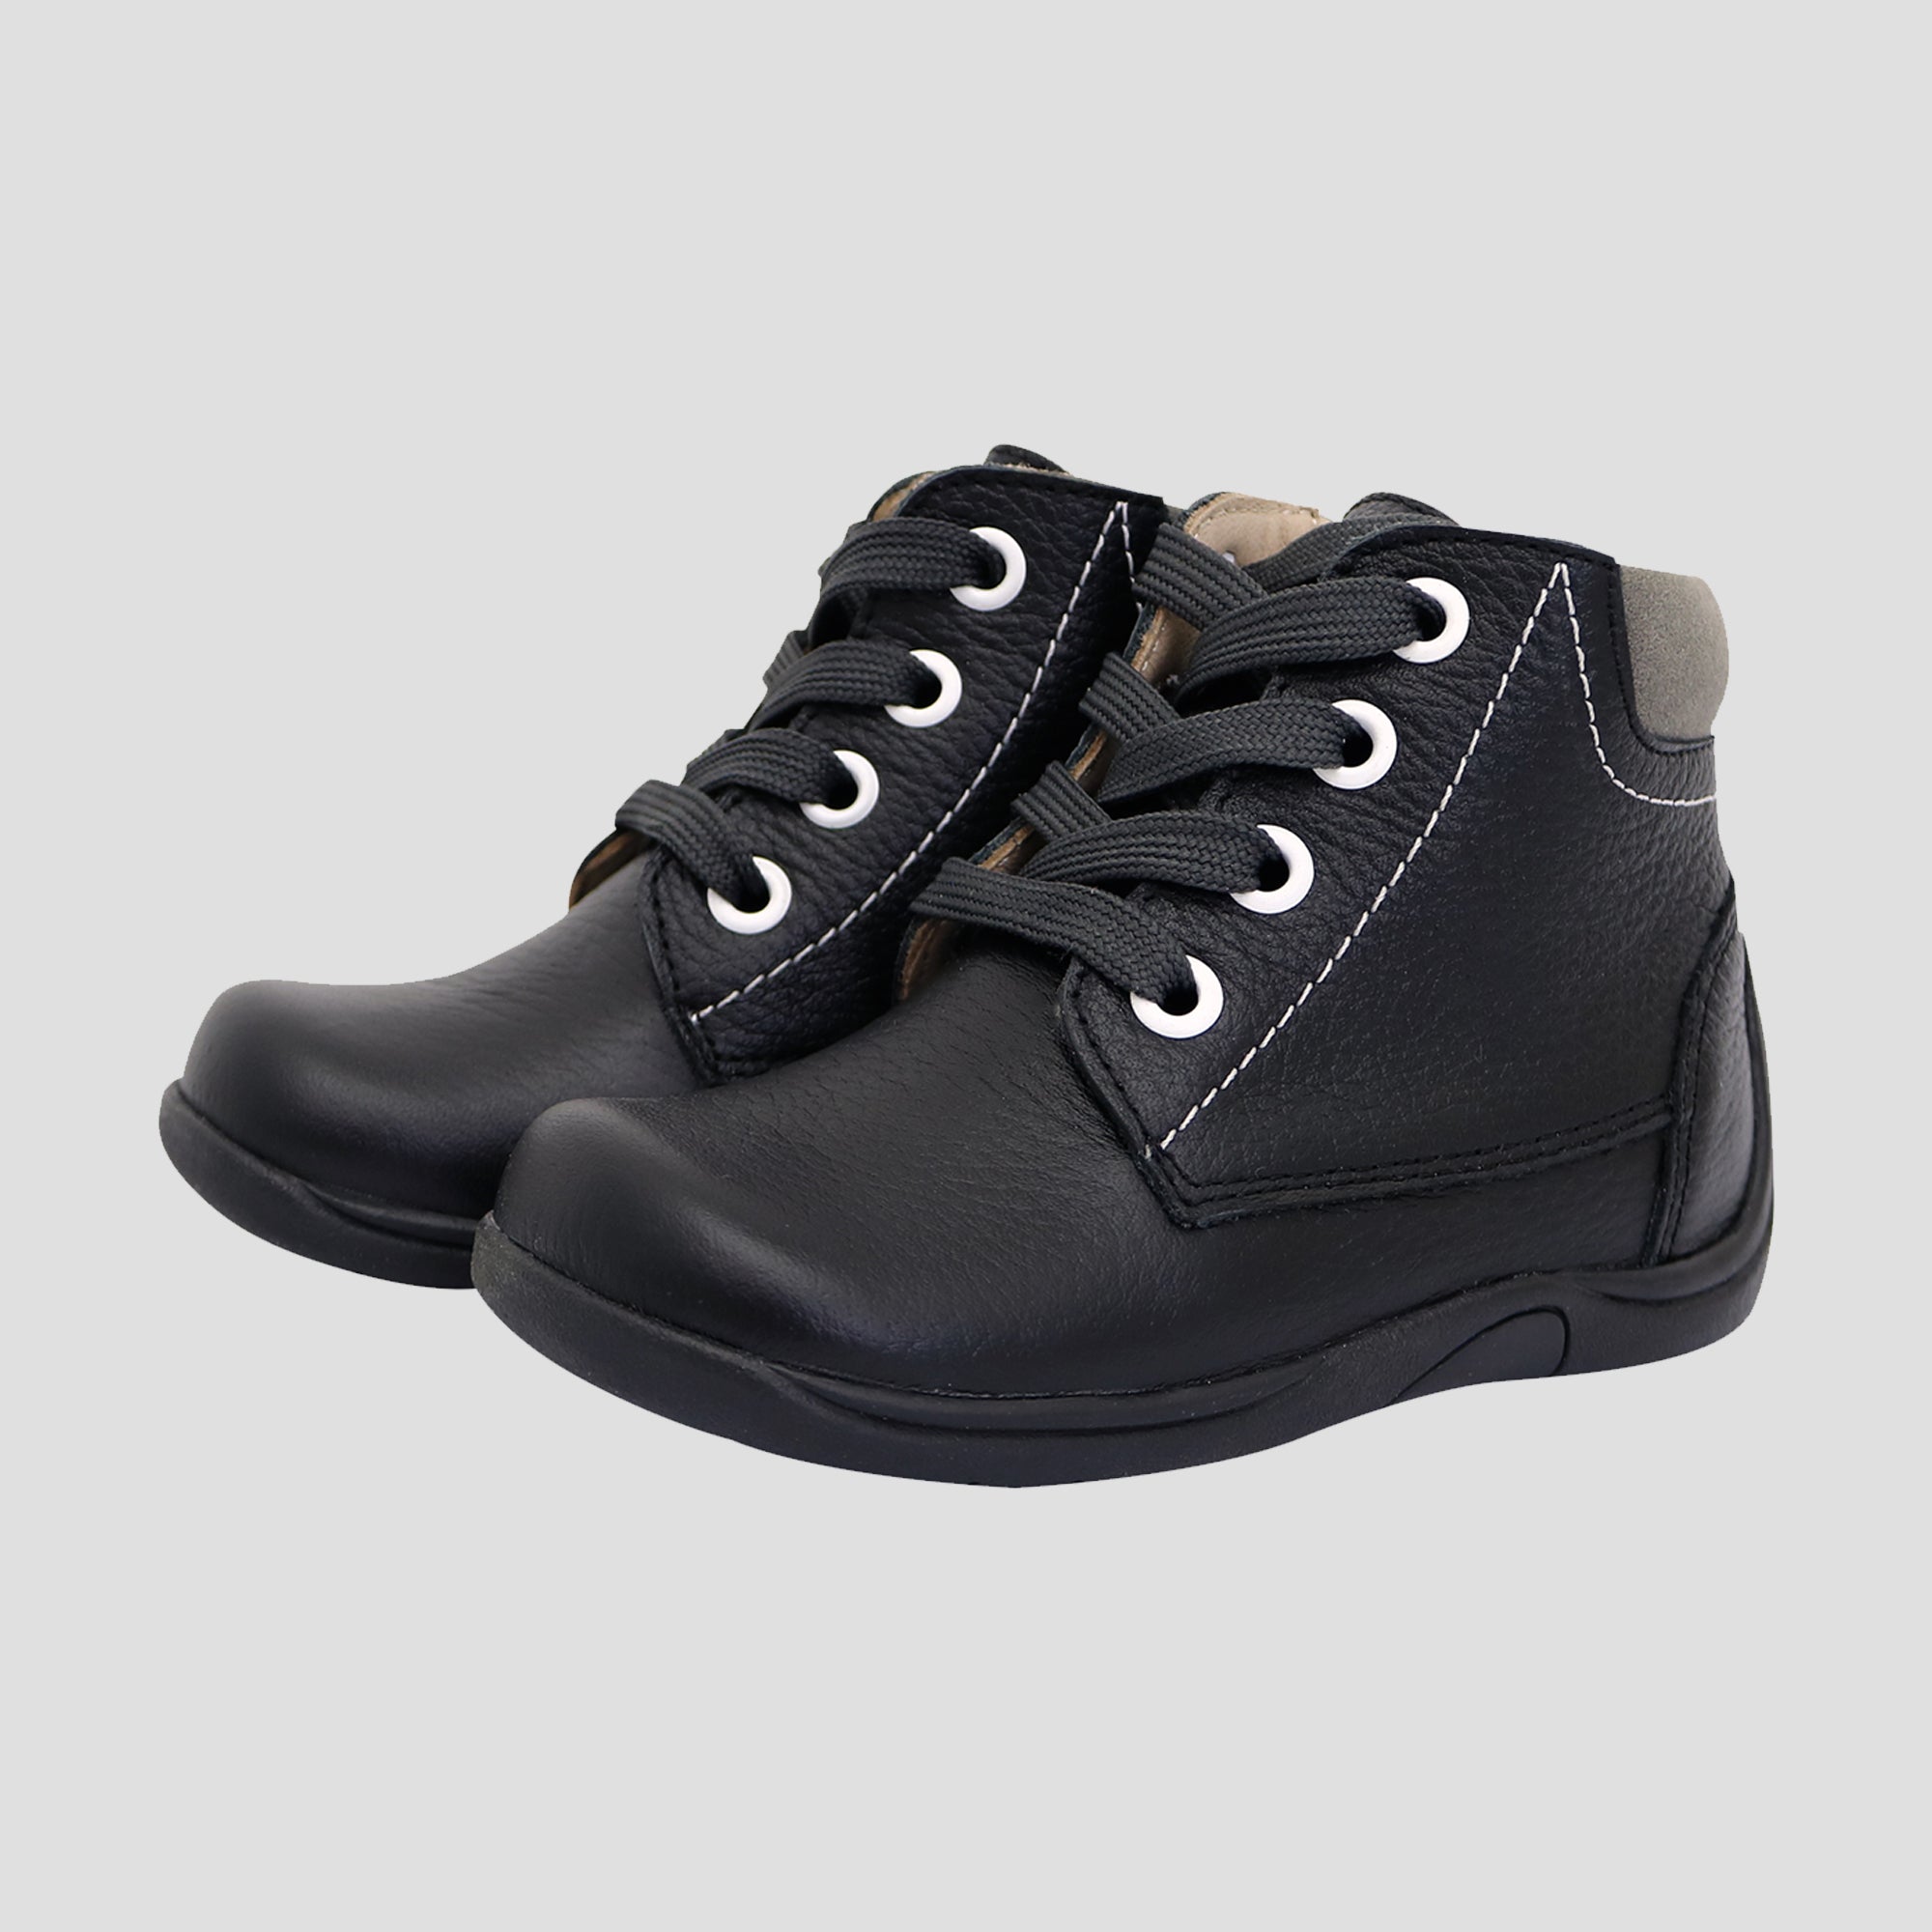 Zapato Pibe - 047 Negro T-19